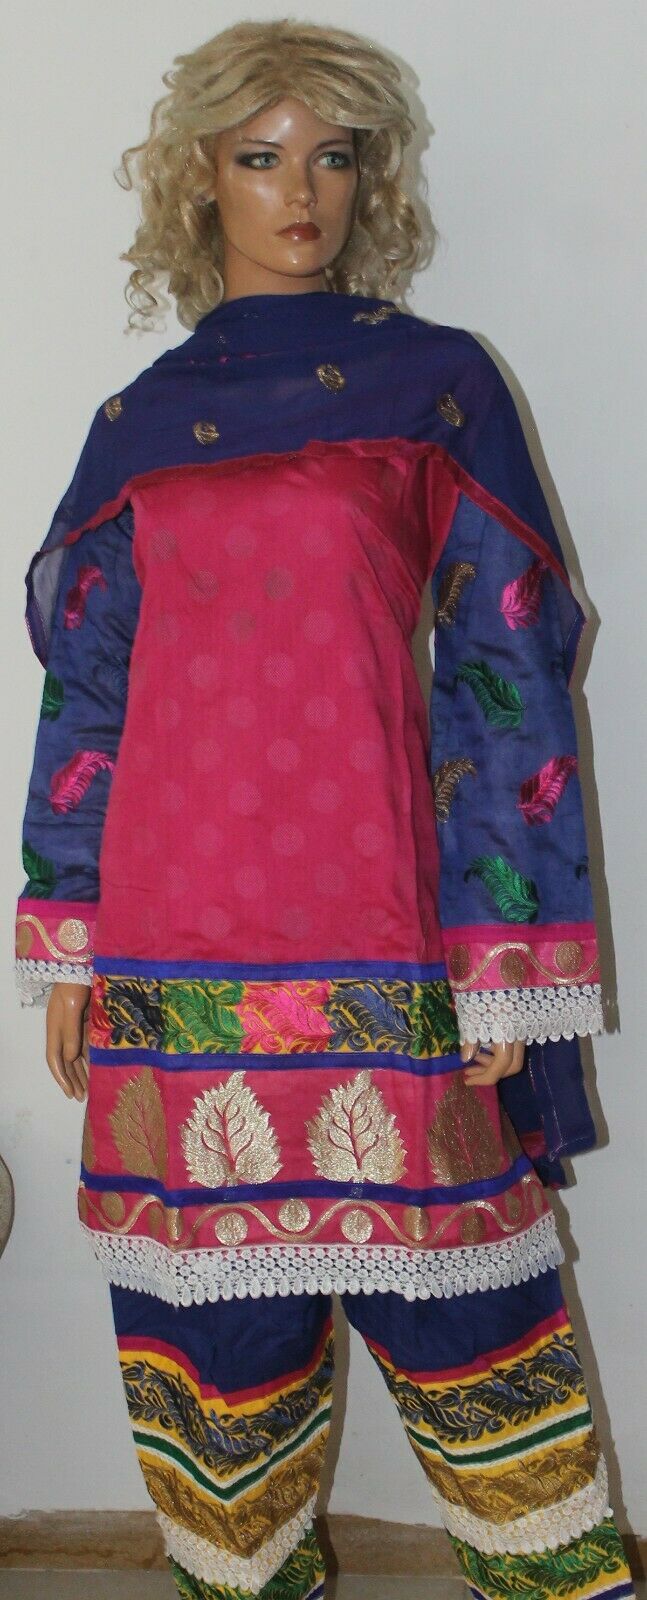 Pink Boutique Wear Embroidered Stitch Cotton Summer  Salwar kameez  Plus size 52